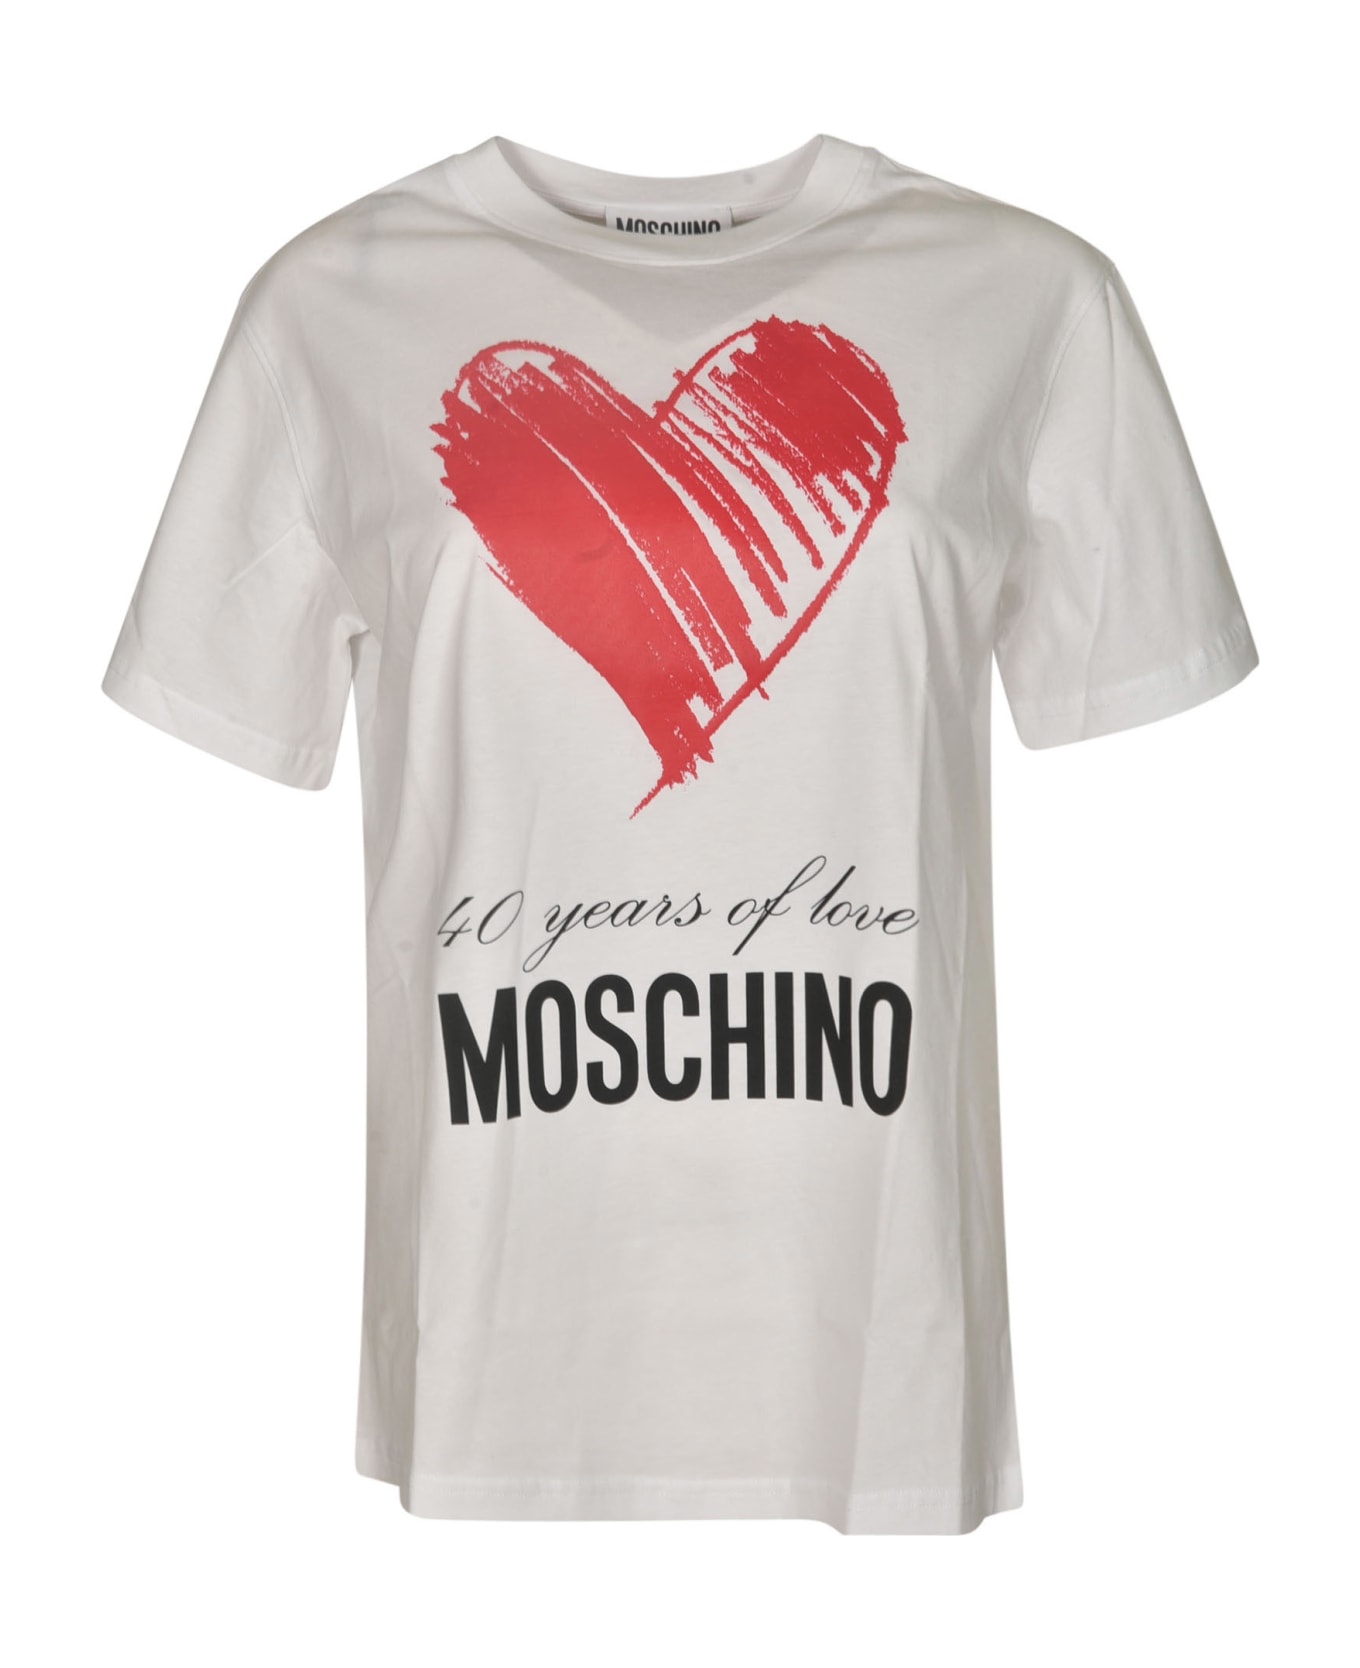 Moschino 60 Years Of Love T-shirt - White